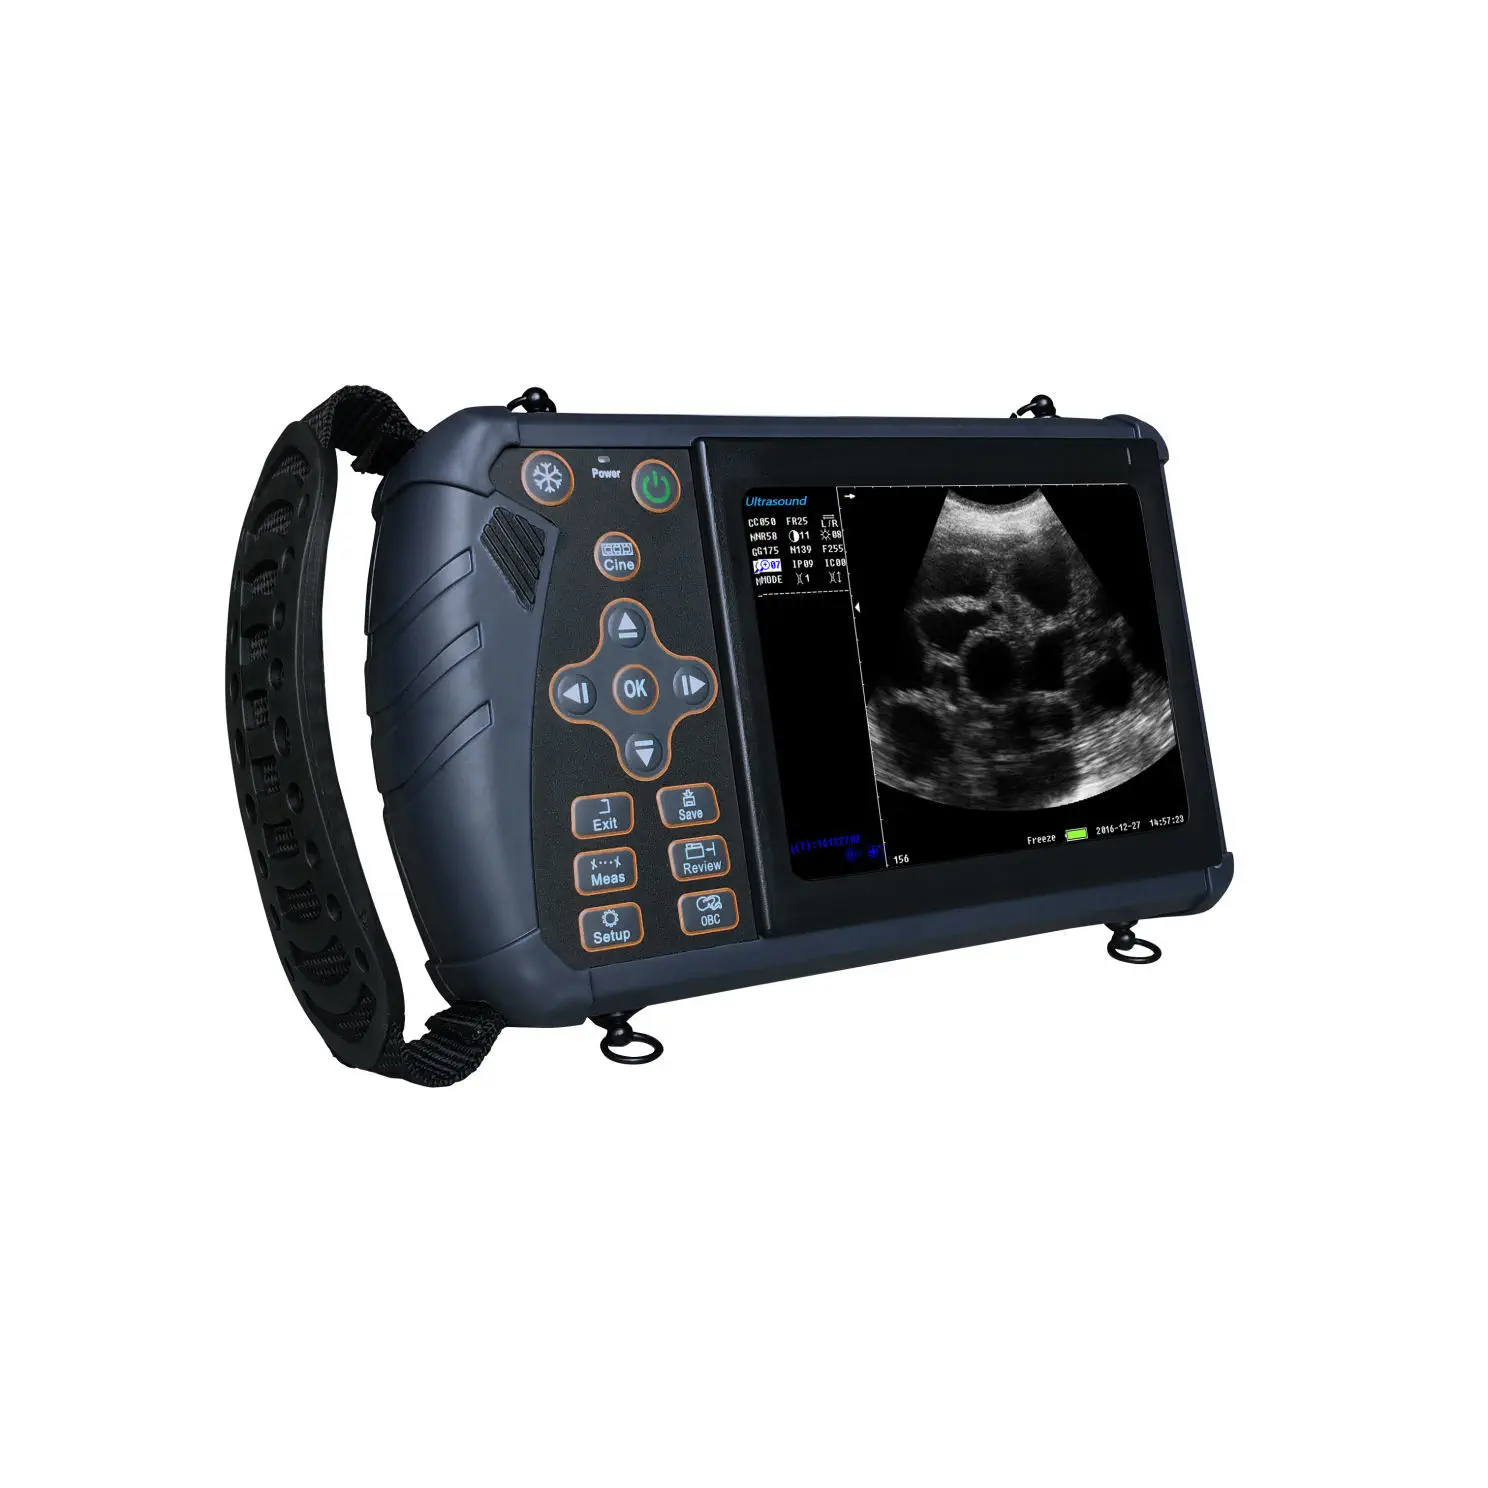 เครื่องอัลตราซาวด์แบบมือถือสำหรับสัตว์ Hand-held veterinary ultrasound system VSM-S1  TOW Intelligent